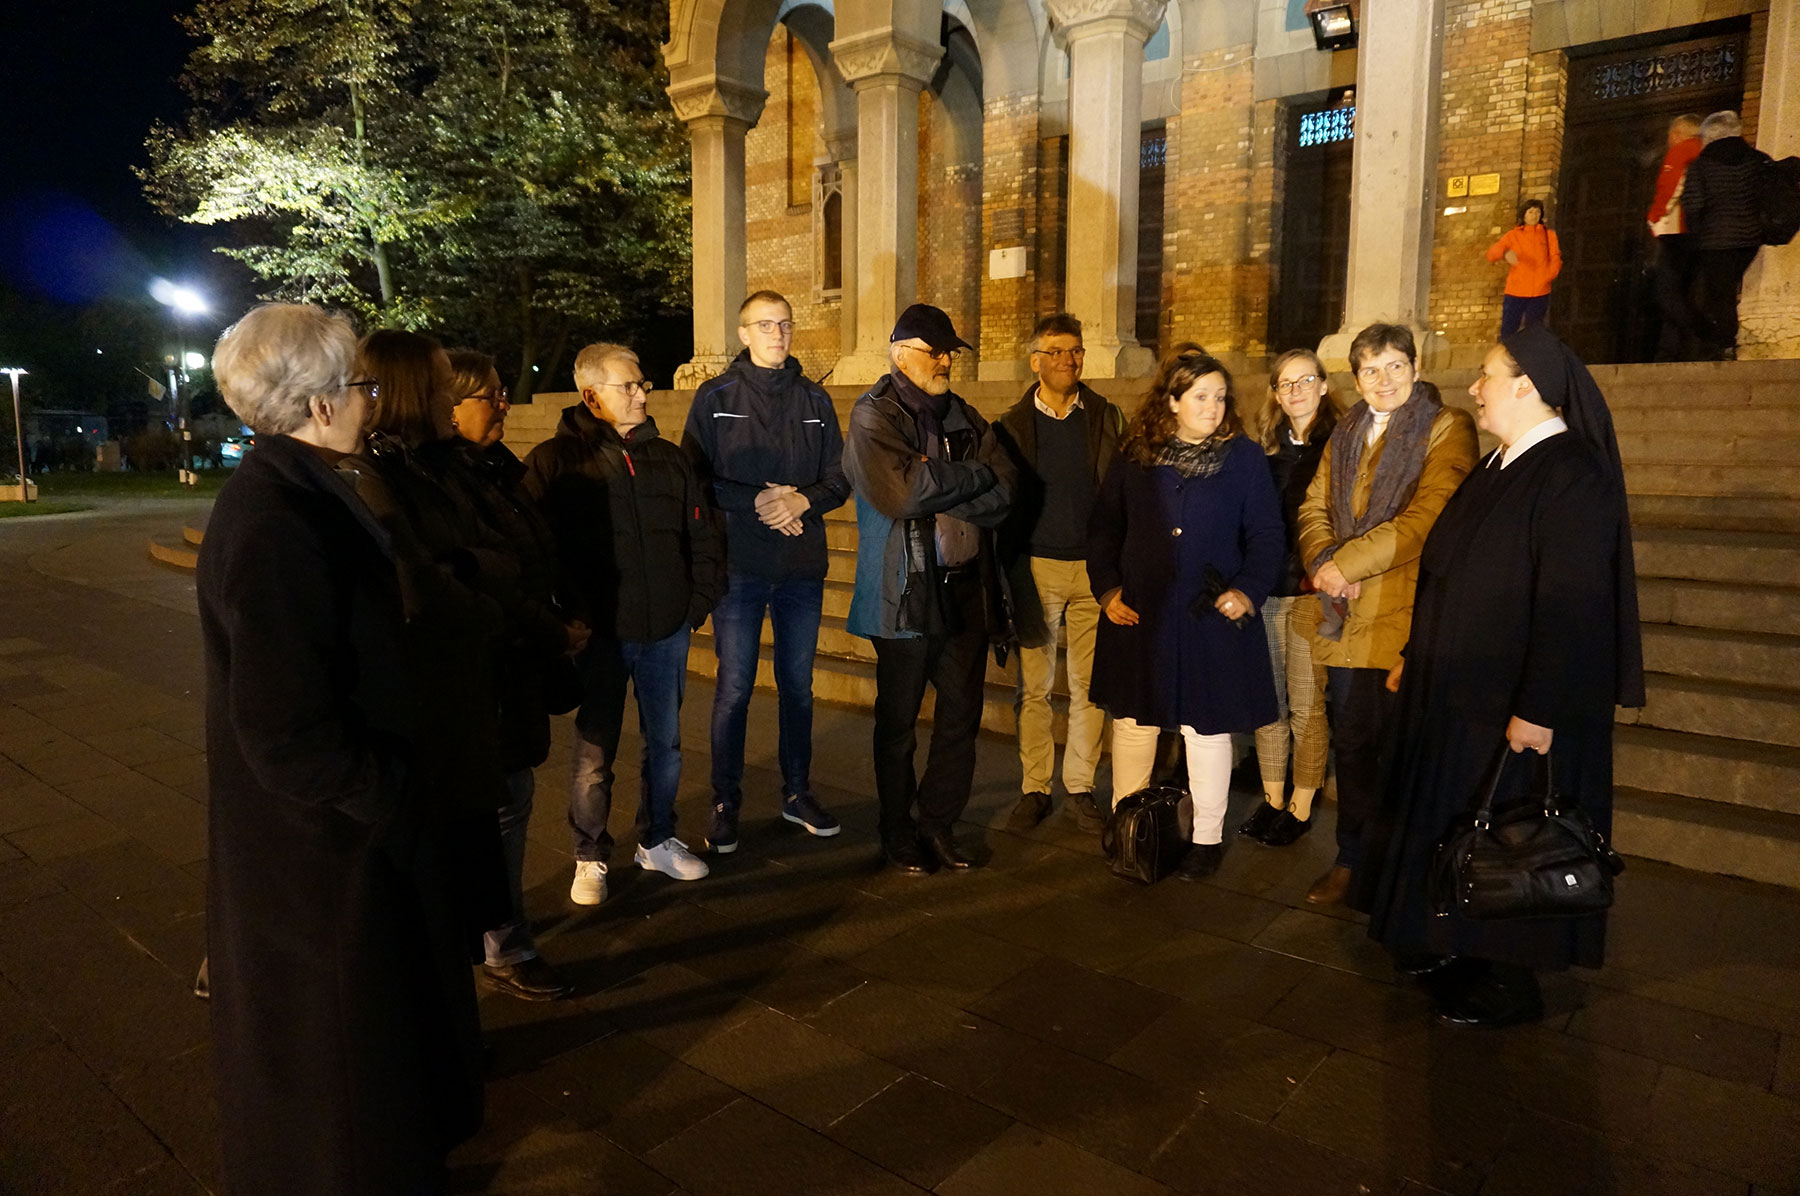 Einige der zum MfE-Meeting angereisten Mitglieder der Schönstatt-Bewegung vor der orthodoxen Kathedrale in Timisoara (Foto: Brehm)